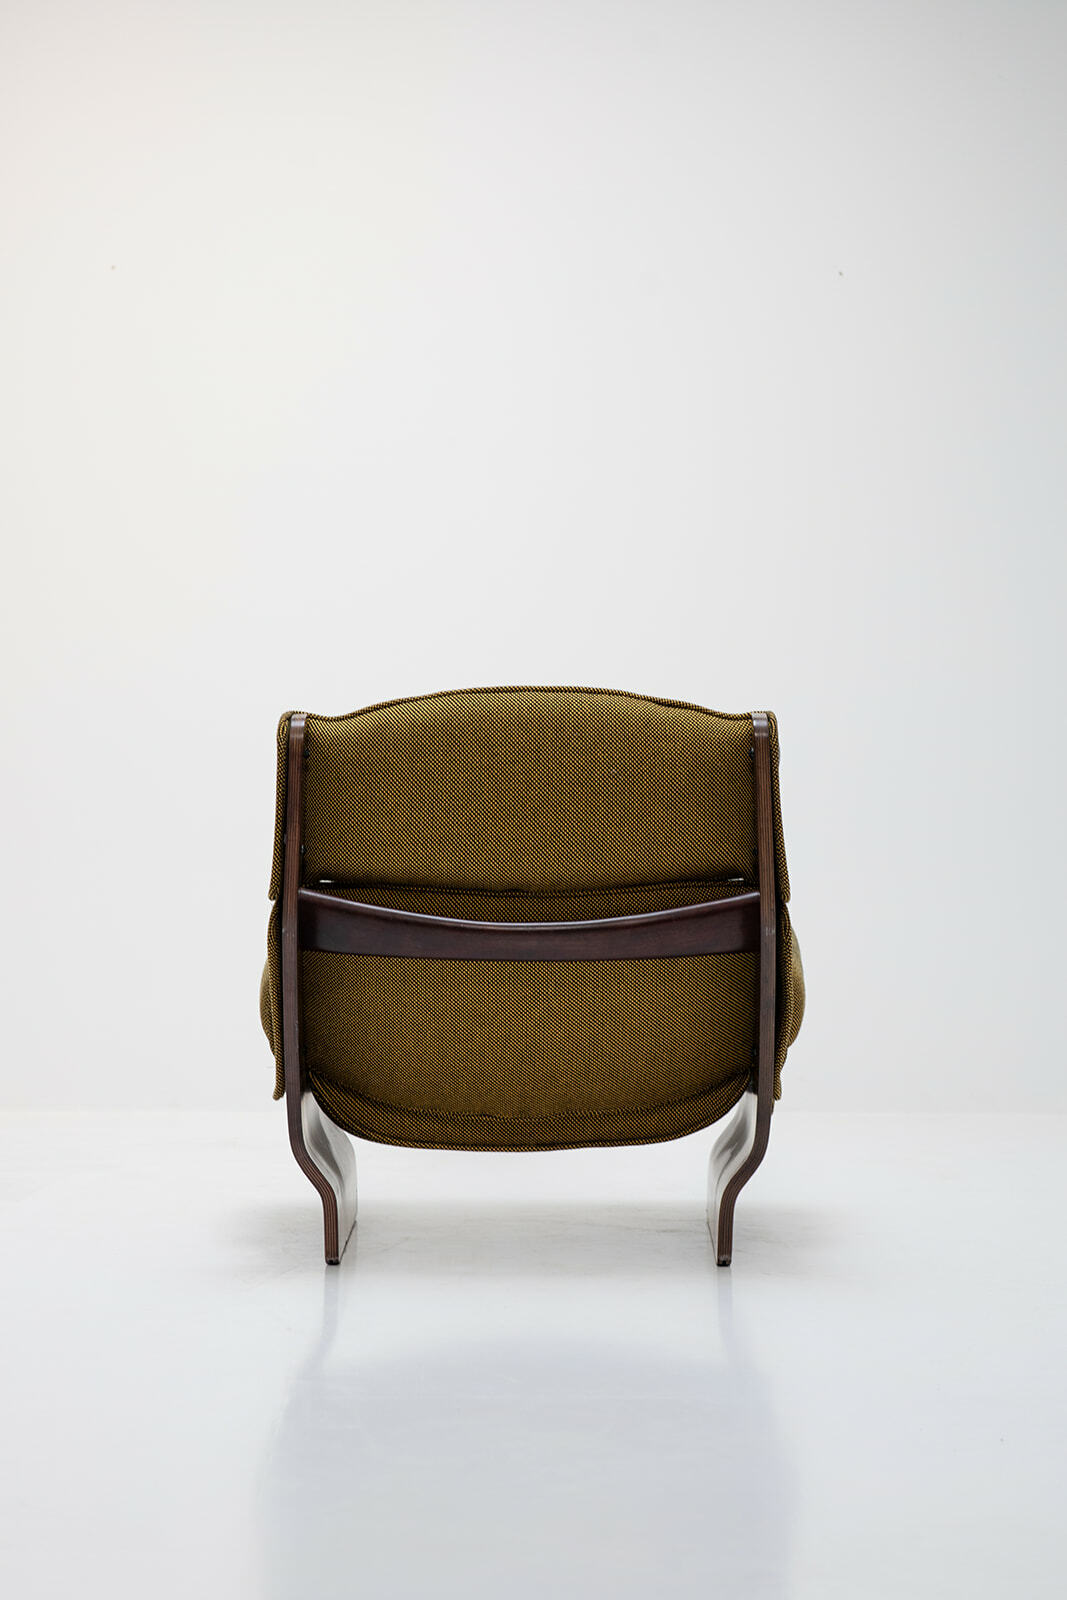 'Canada' Chair by Osvaldo Borsani